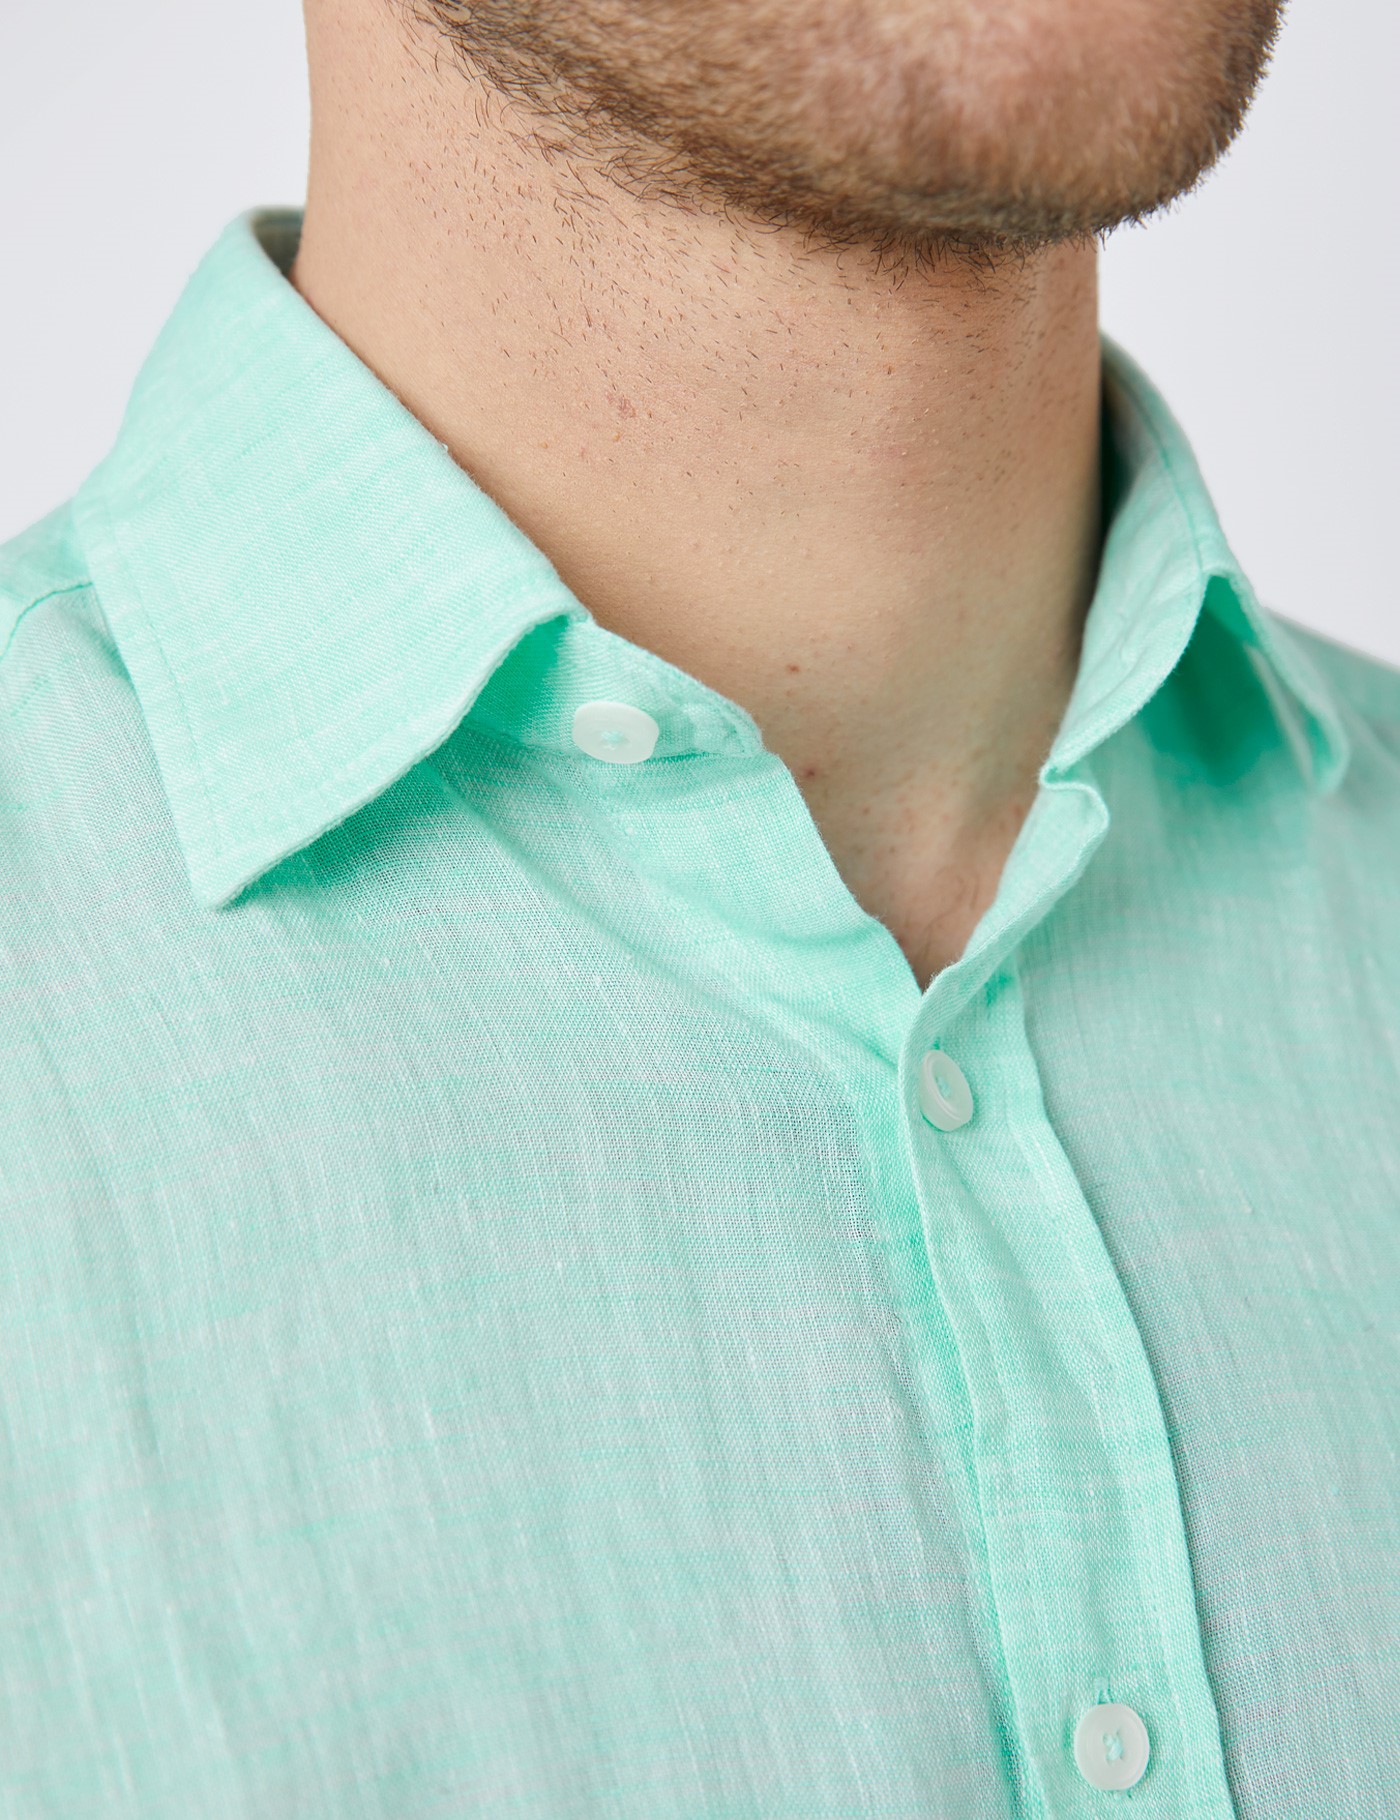 Men’s Mint Green Tailored Fit Short Sleeve Linen Shirt | Hawes & Curtis